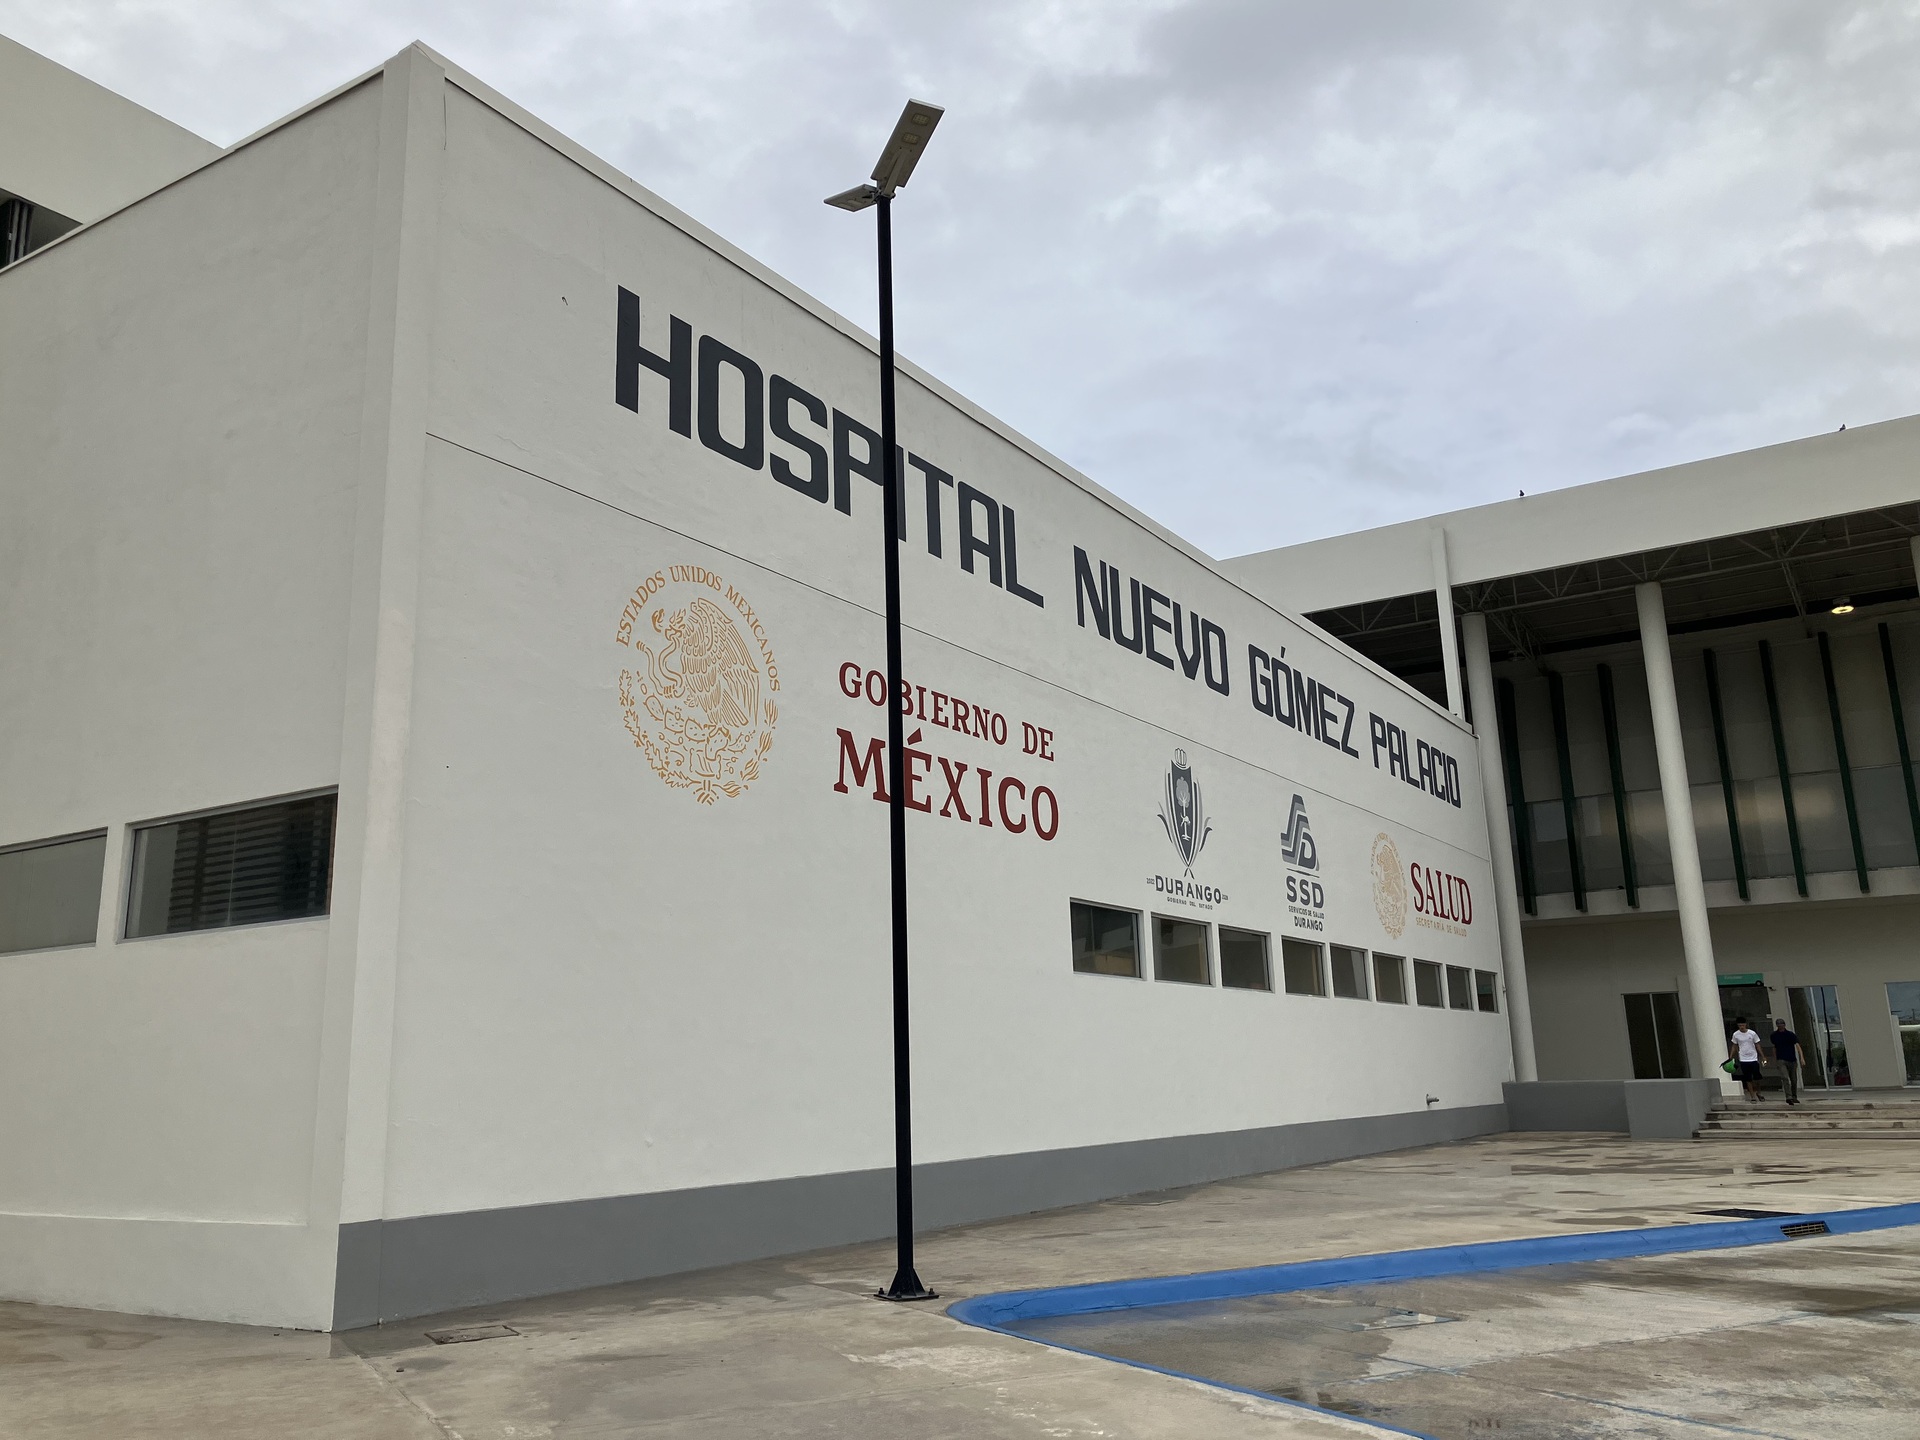 Anuncian Jornada de Vasectomías sin bisturí en el Hospital Nuevo de Gómez Palacio